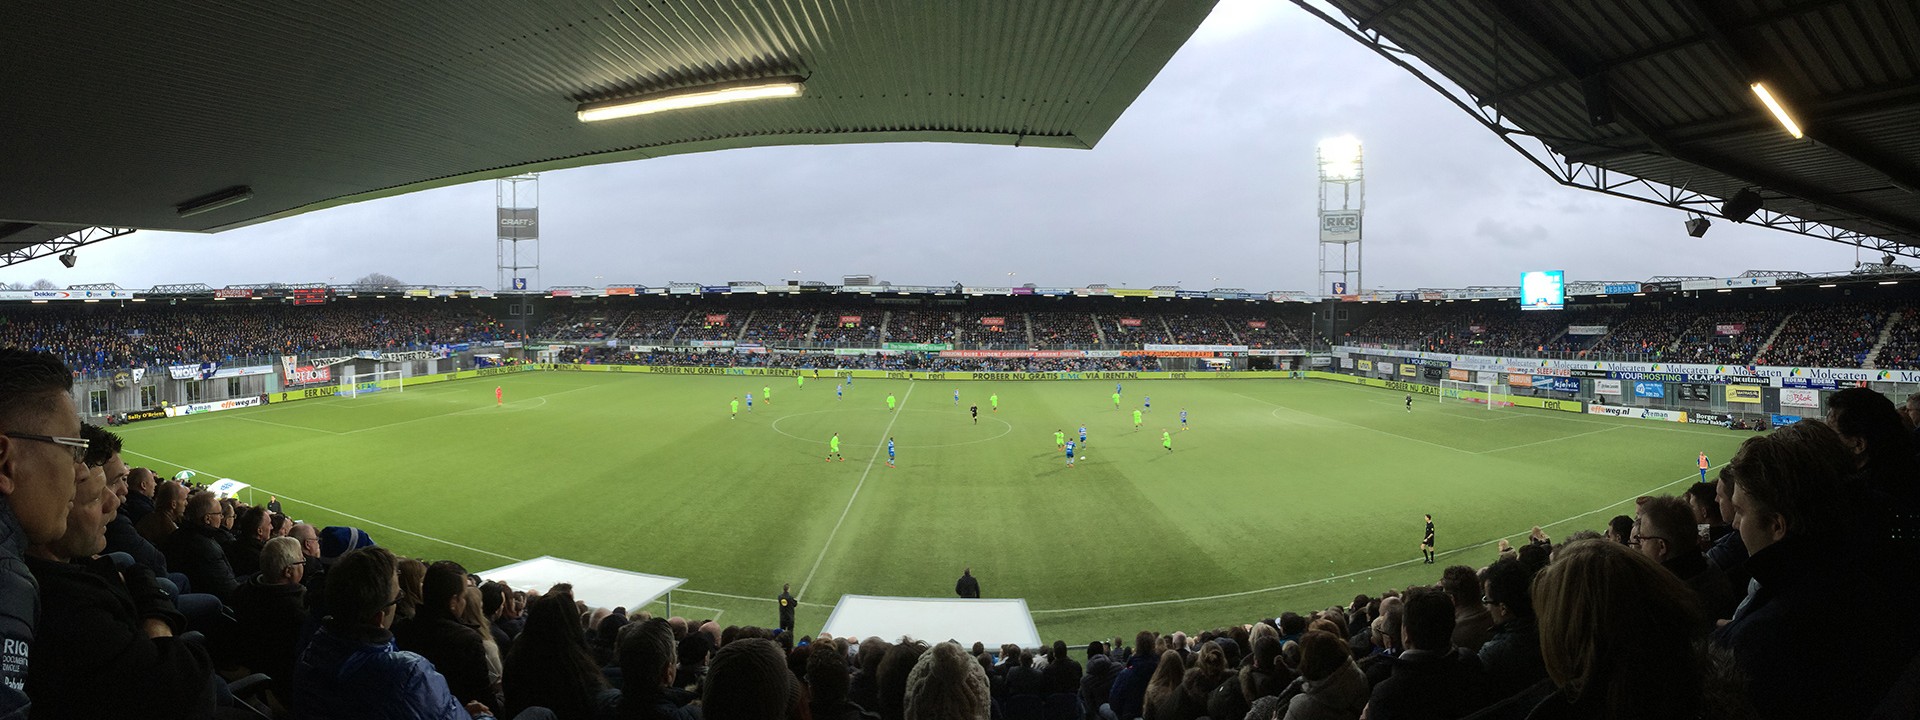 PEC Zwolle | Zwolle | Sportsexposure